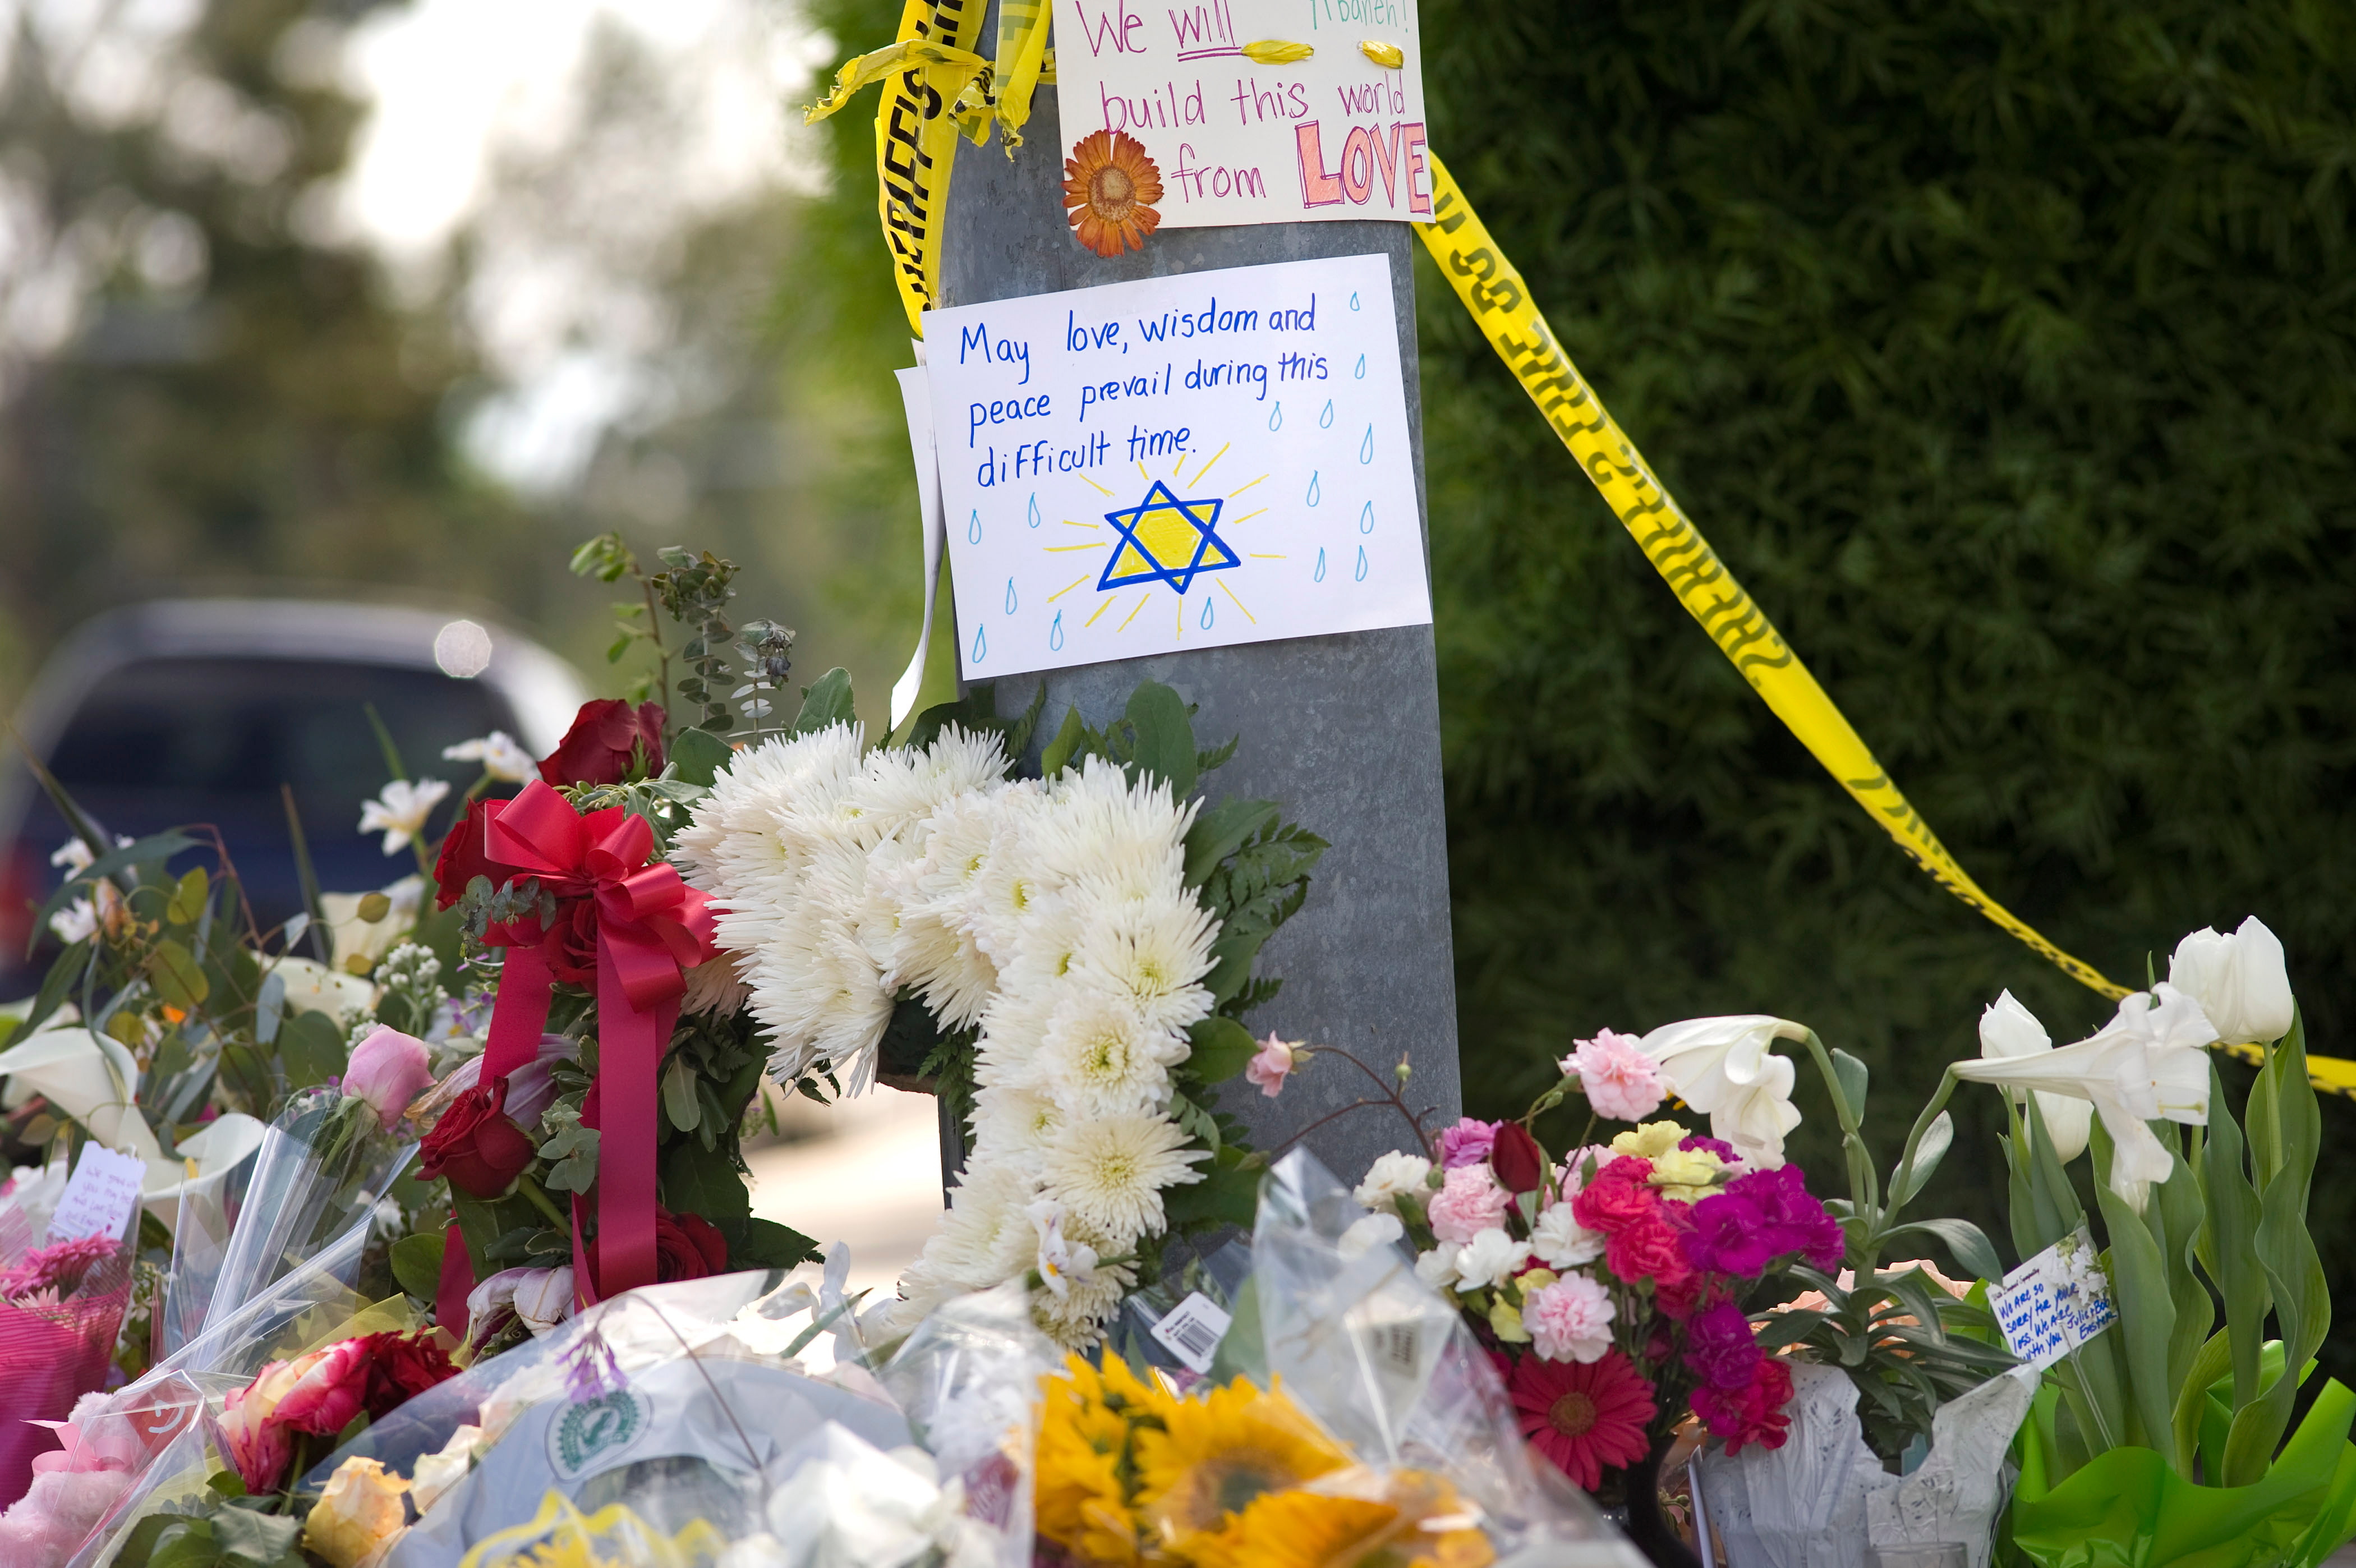 En abril de 2019, un hombre armado identificado como John Timothy Earnest, de 19 años, ingresó a la sinagoga Chabad de Poway 
